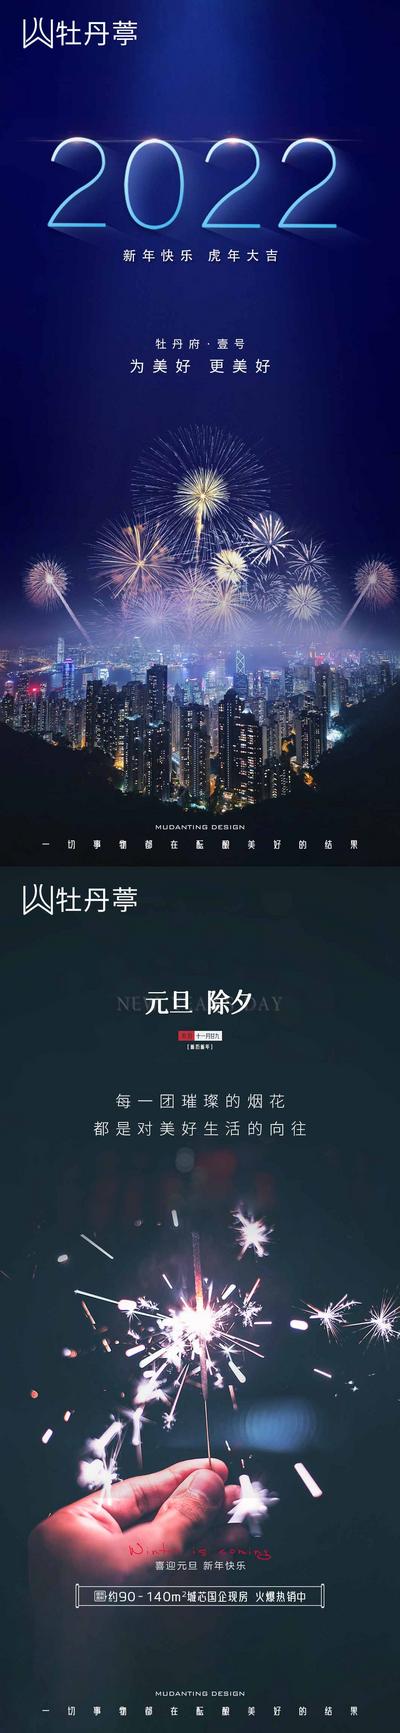 南门网 海报 公历节日 元旦 新年 烟花 夜景 城市 系列